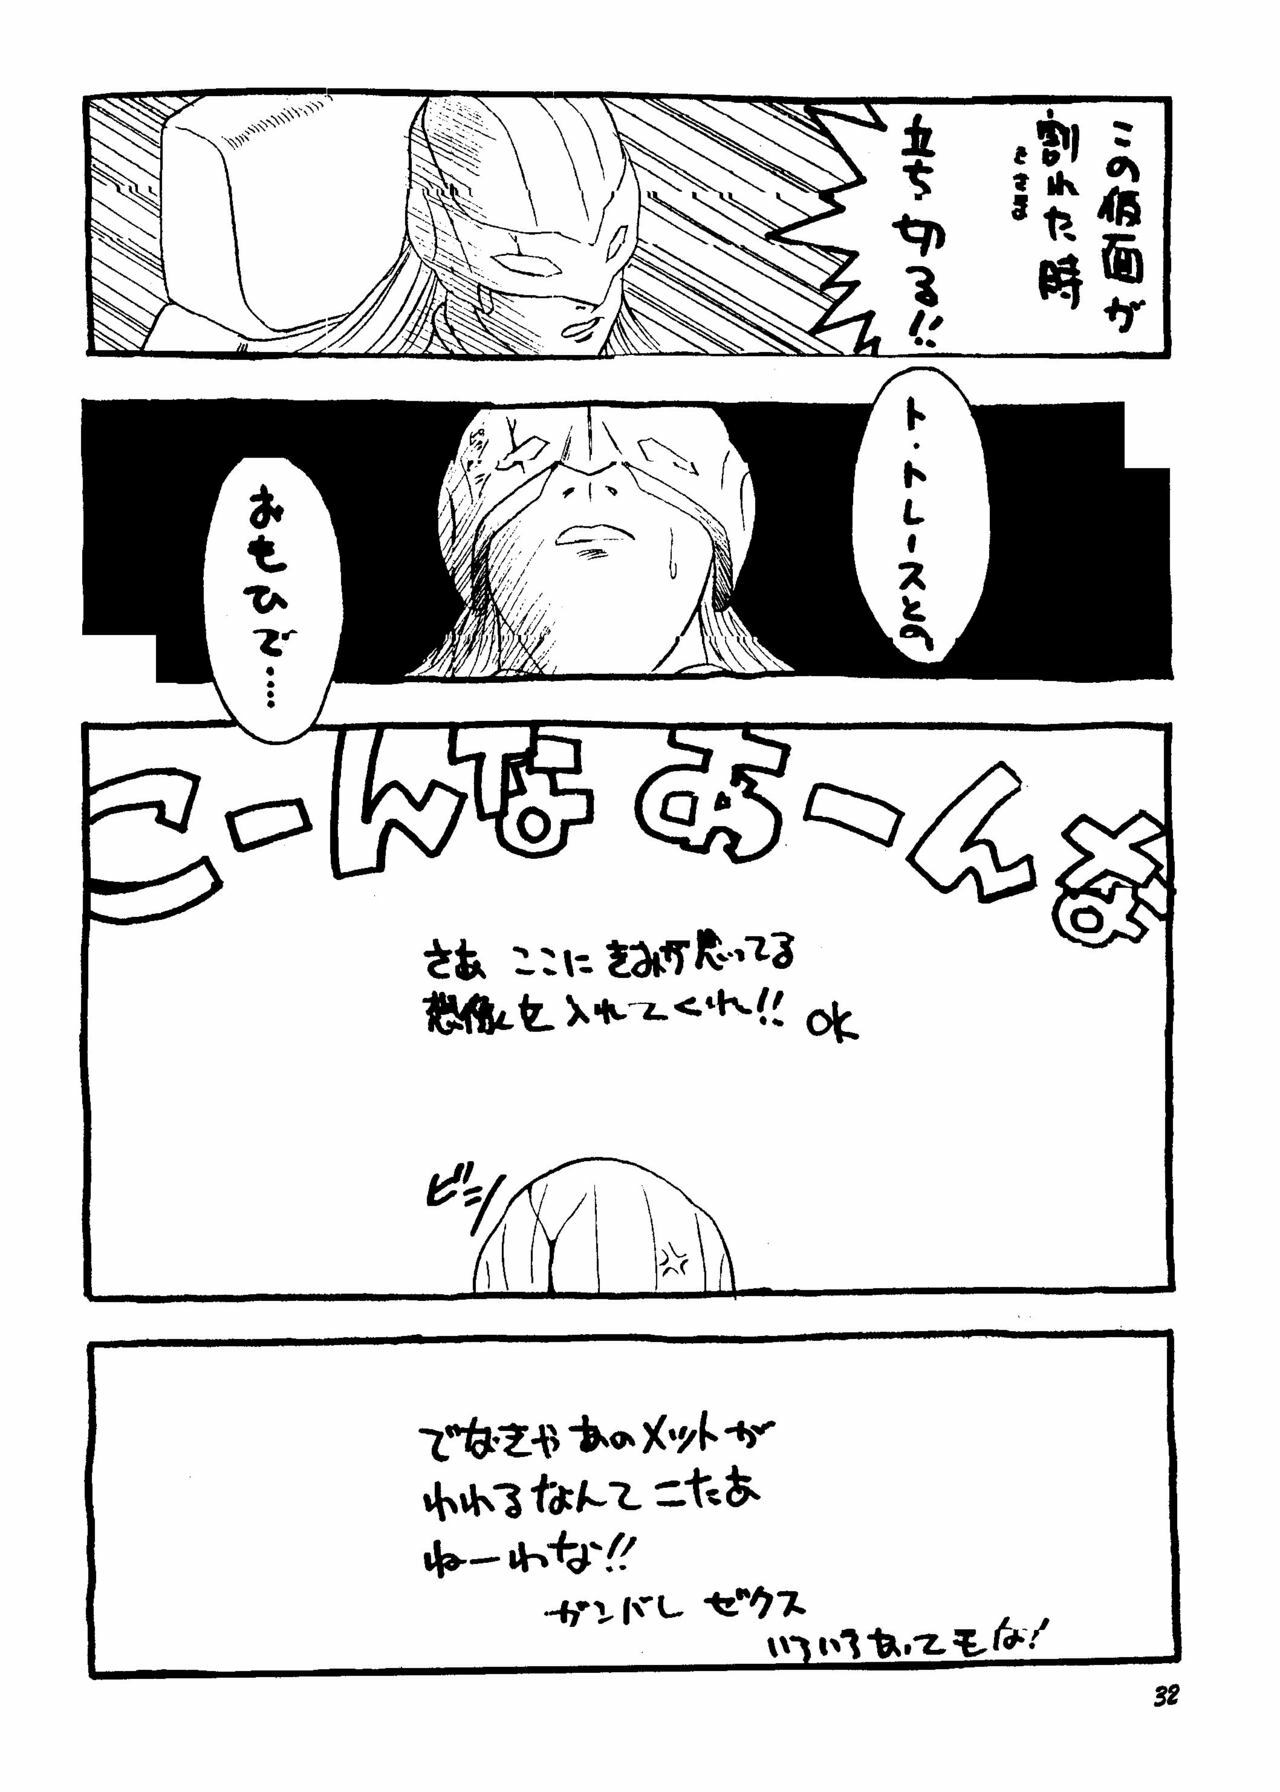 [Rupinasu Touzokudan & Cha Cha Cha Brothers] Shinu no wa Yatsura da (Gundam Wing) page 31 full